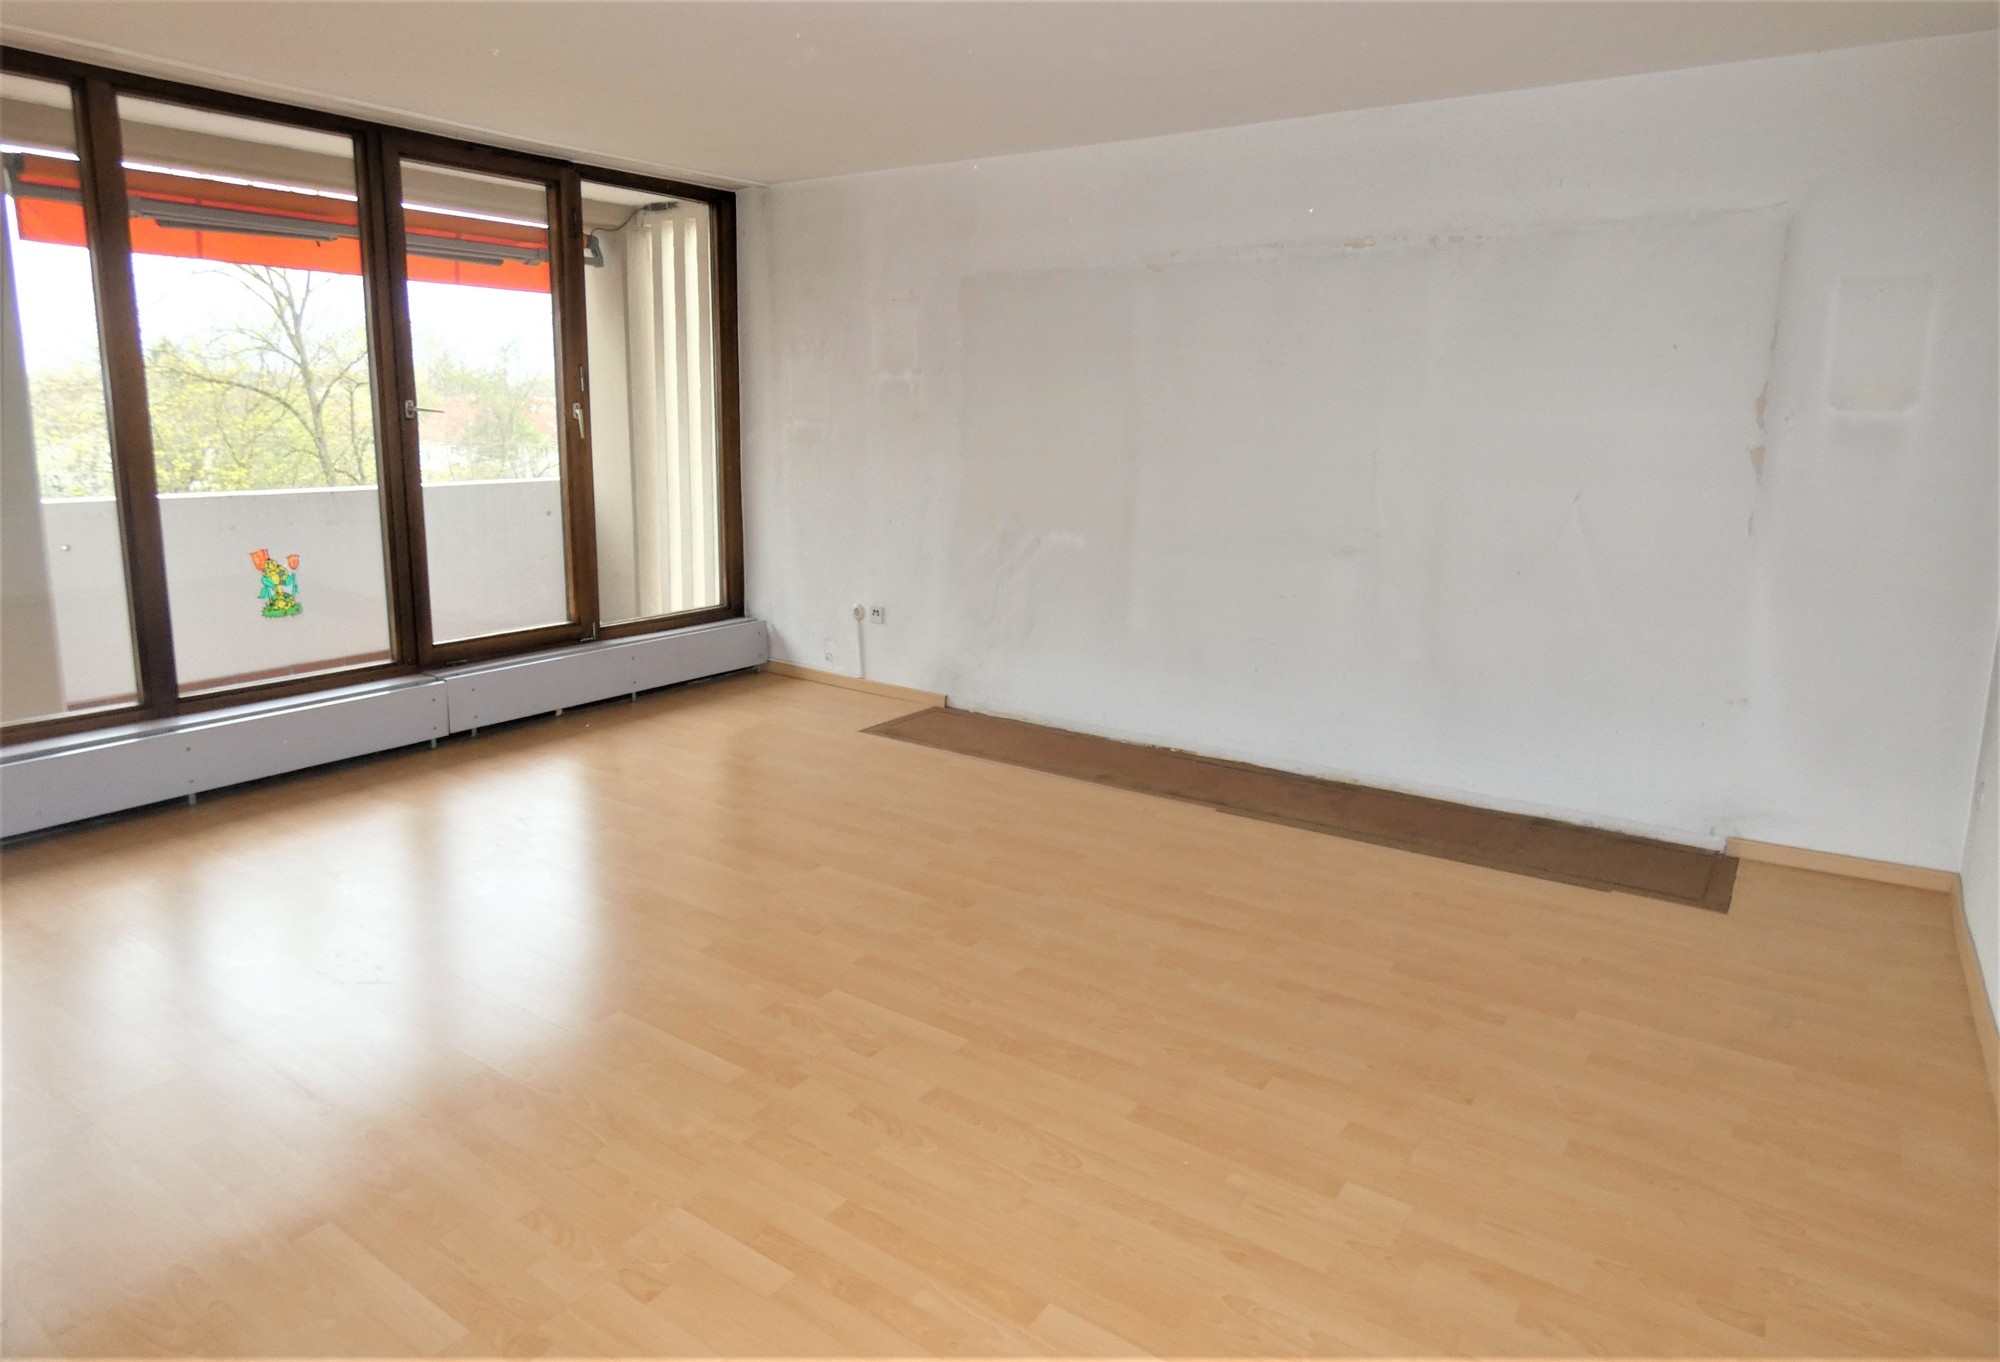 HUST Immobilien GmbH & Co. KG - Immobilienangebot - Karlsruhe / Durlach - Alle - In Ihrer Nachbarschaft wurde diese 3-Zimmer-Wohnung mit zwei Balkonen gerade erst VERKAUFT!